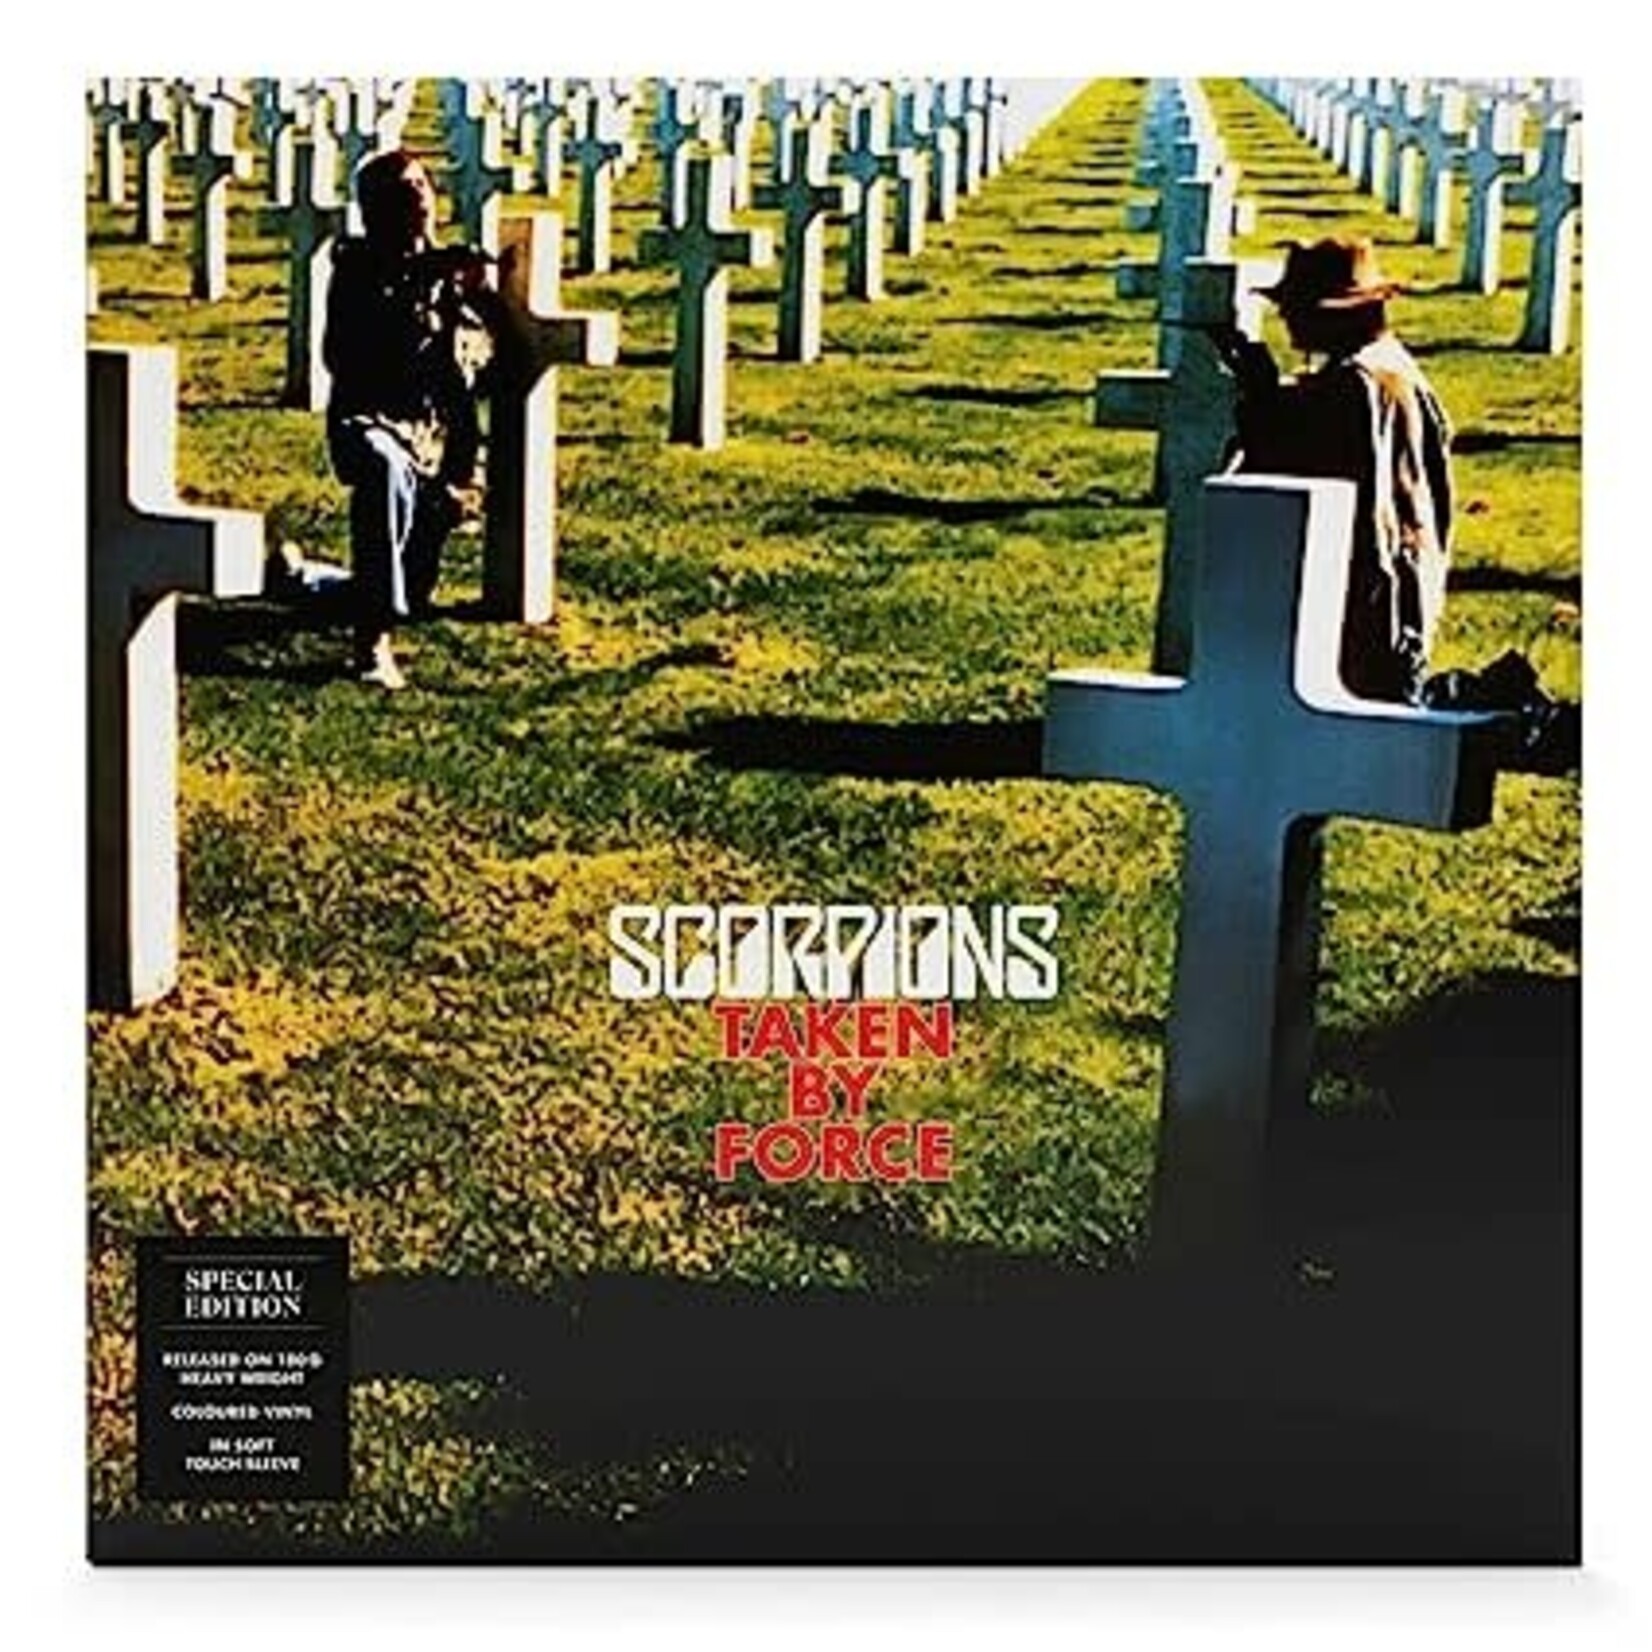 Vinyl Scorpions - Taken By Force